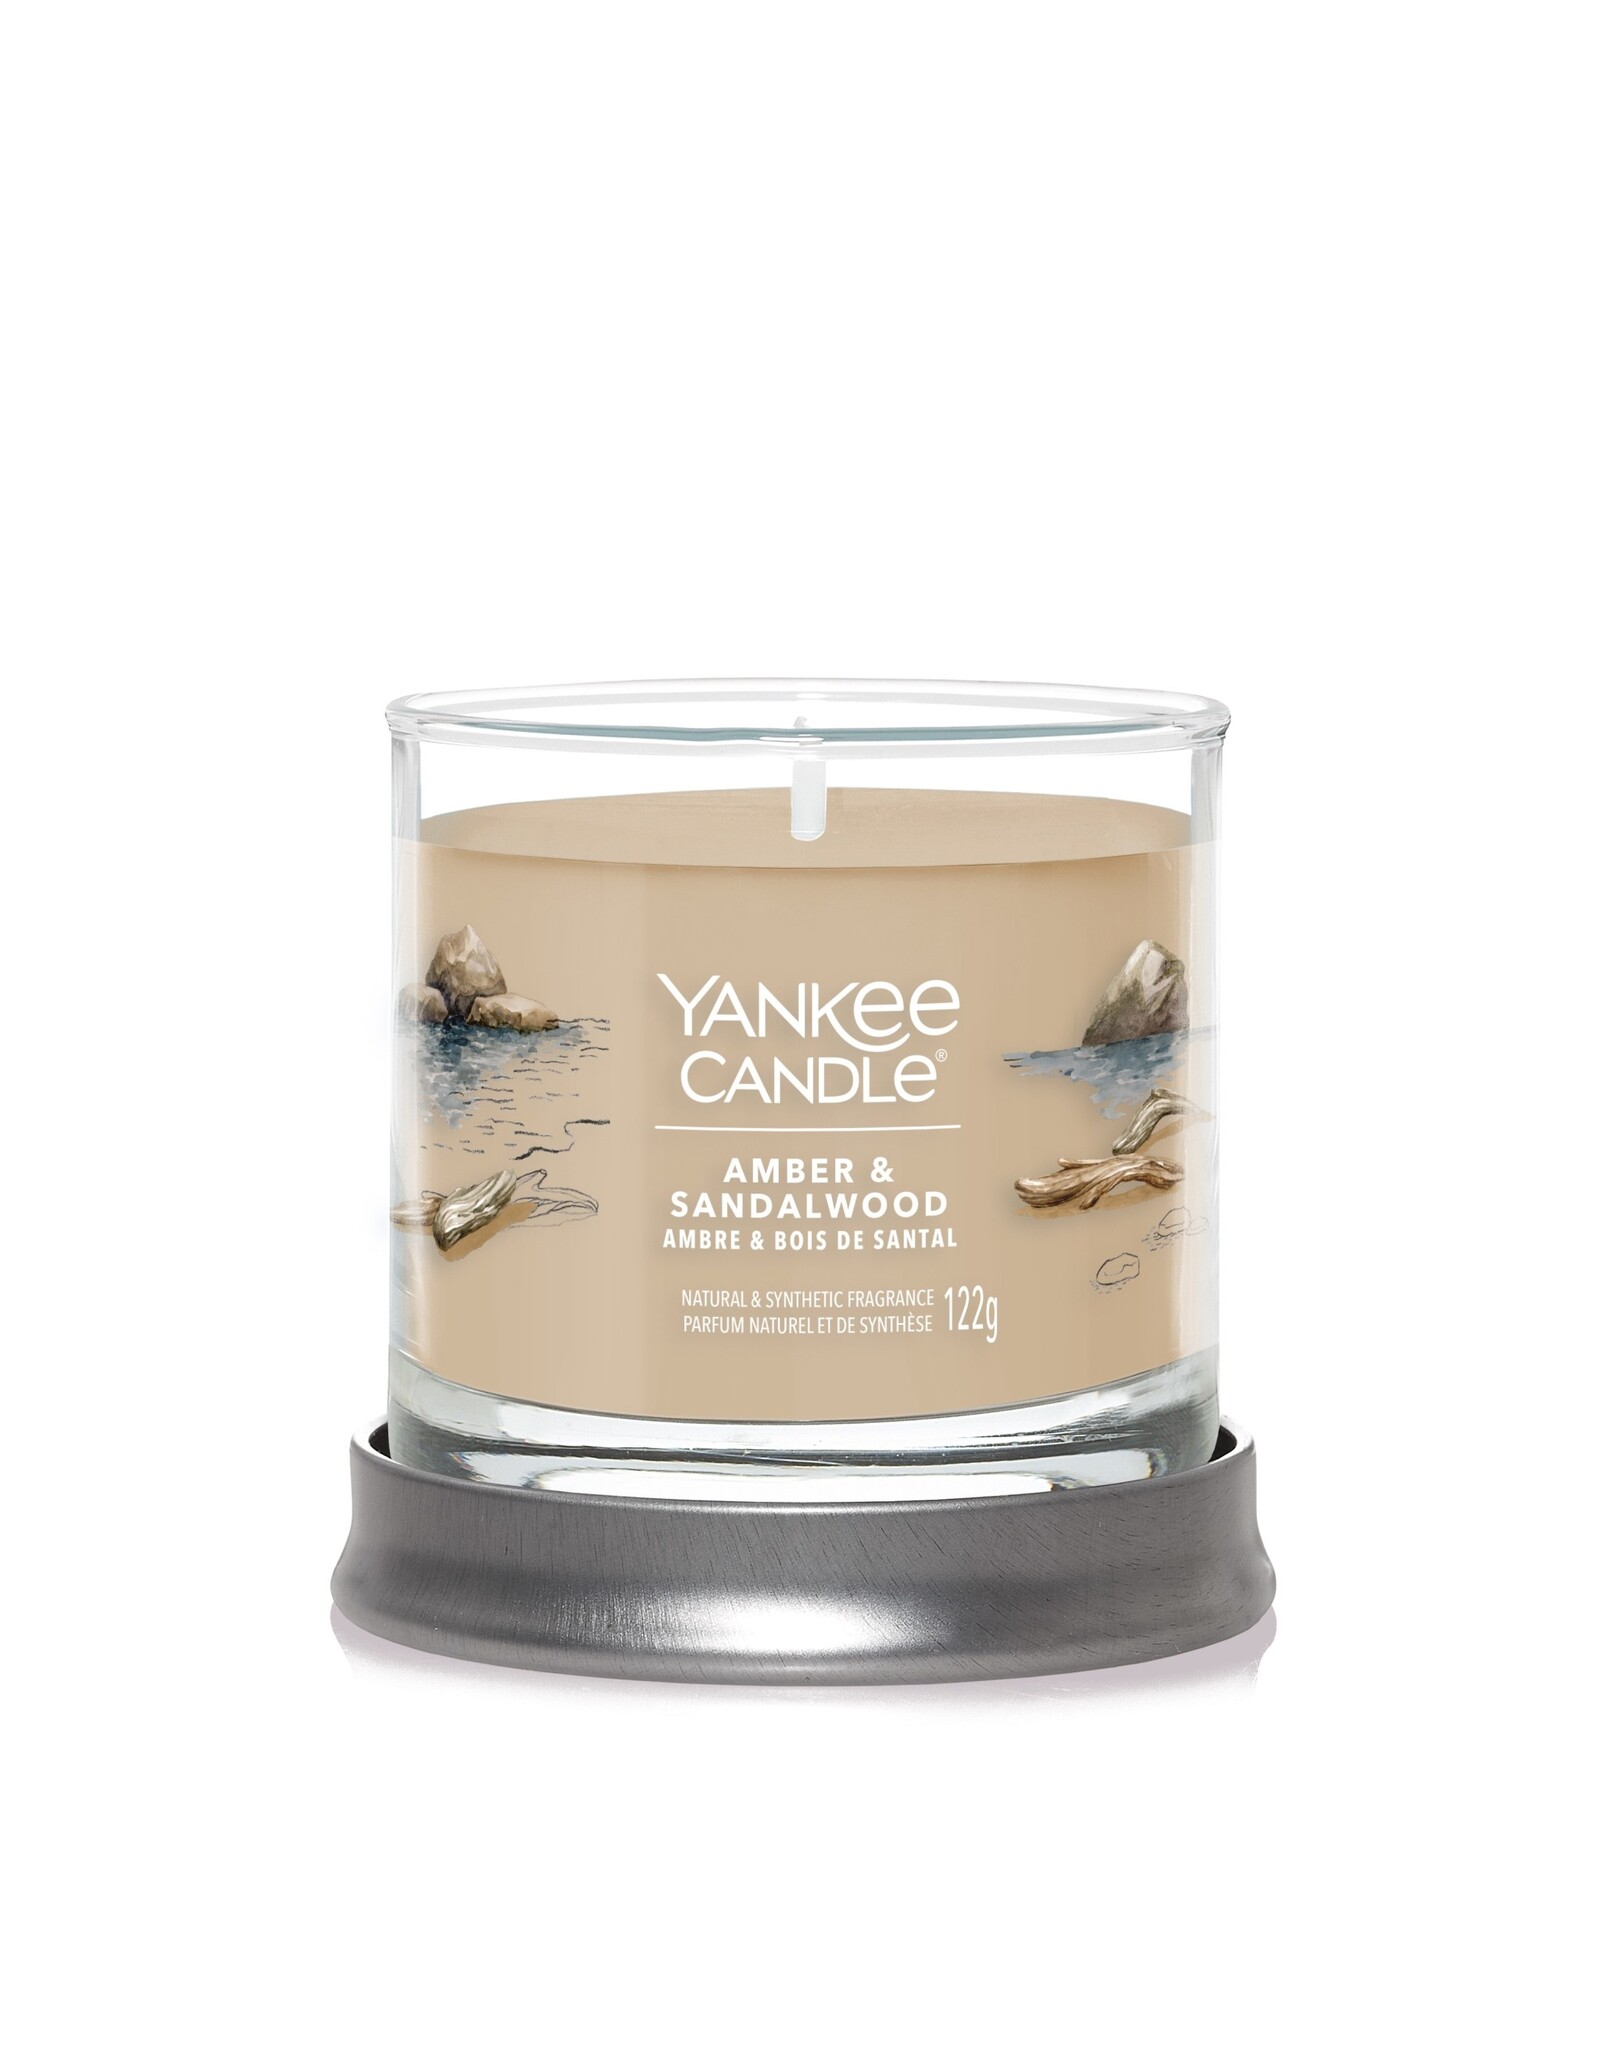 Yankee Candle Amber & Sandalwood -  Signature Small Tumbler